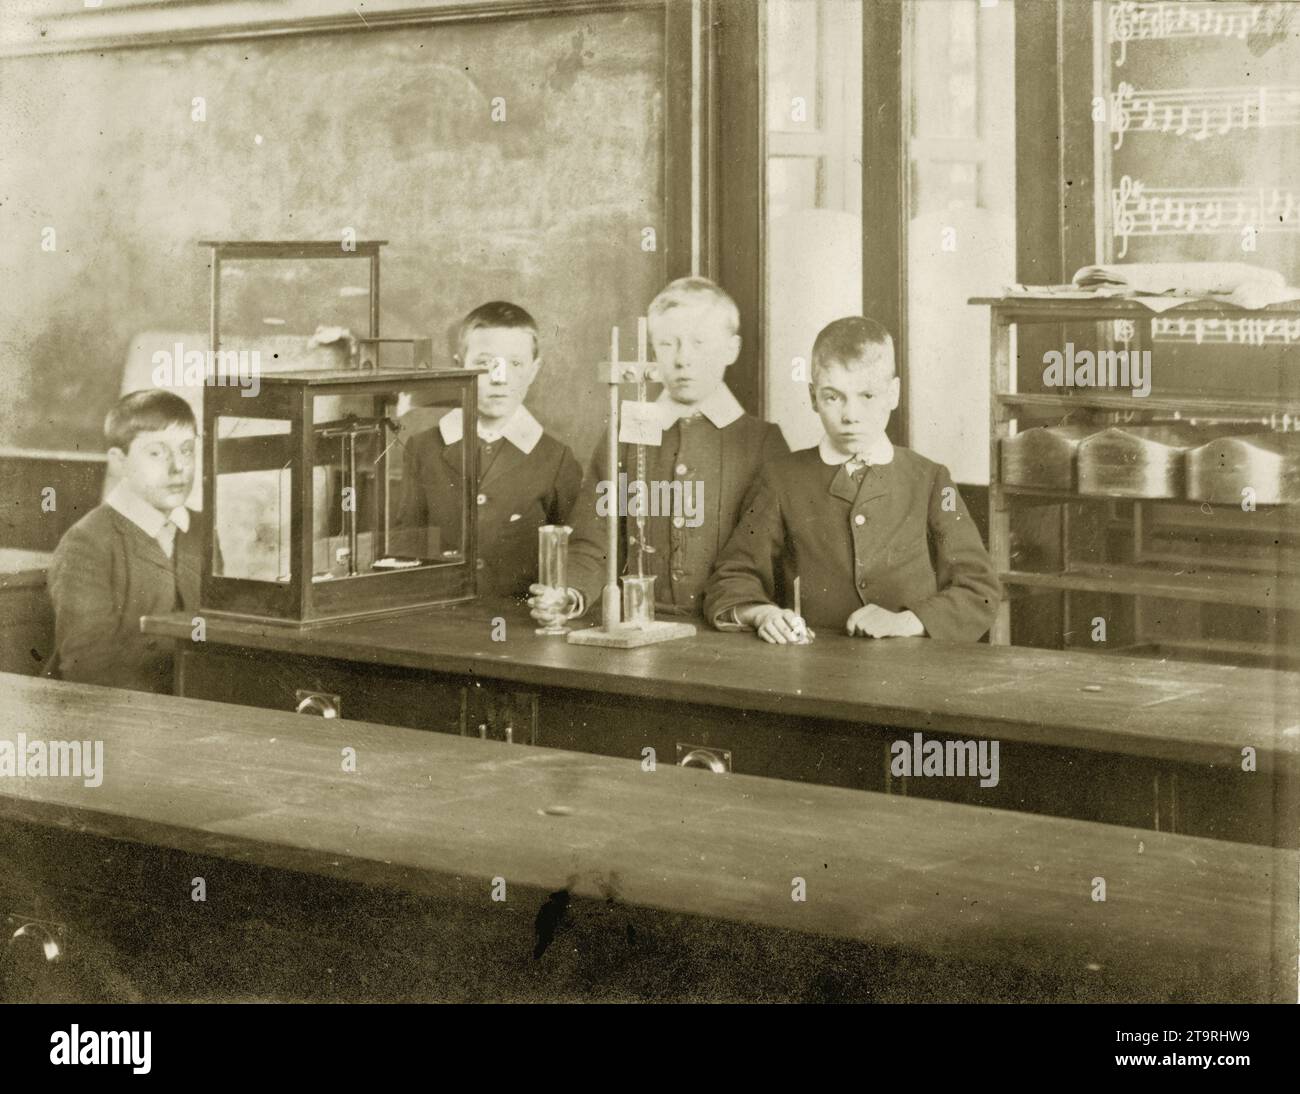 Carte postale édouardienne ou victorienne originale d'écoliers édouardiens ou victoriens assistant à des cours de sciences en classe, avec équipement. Circa 1905, Royaume-Uni Banque D'Images